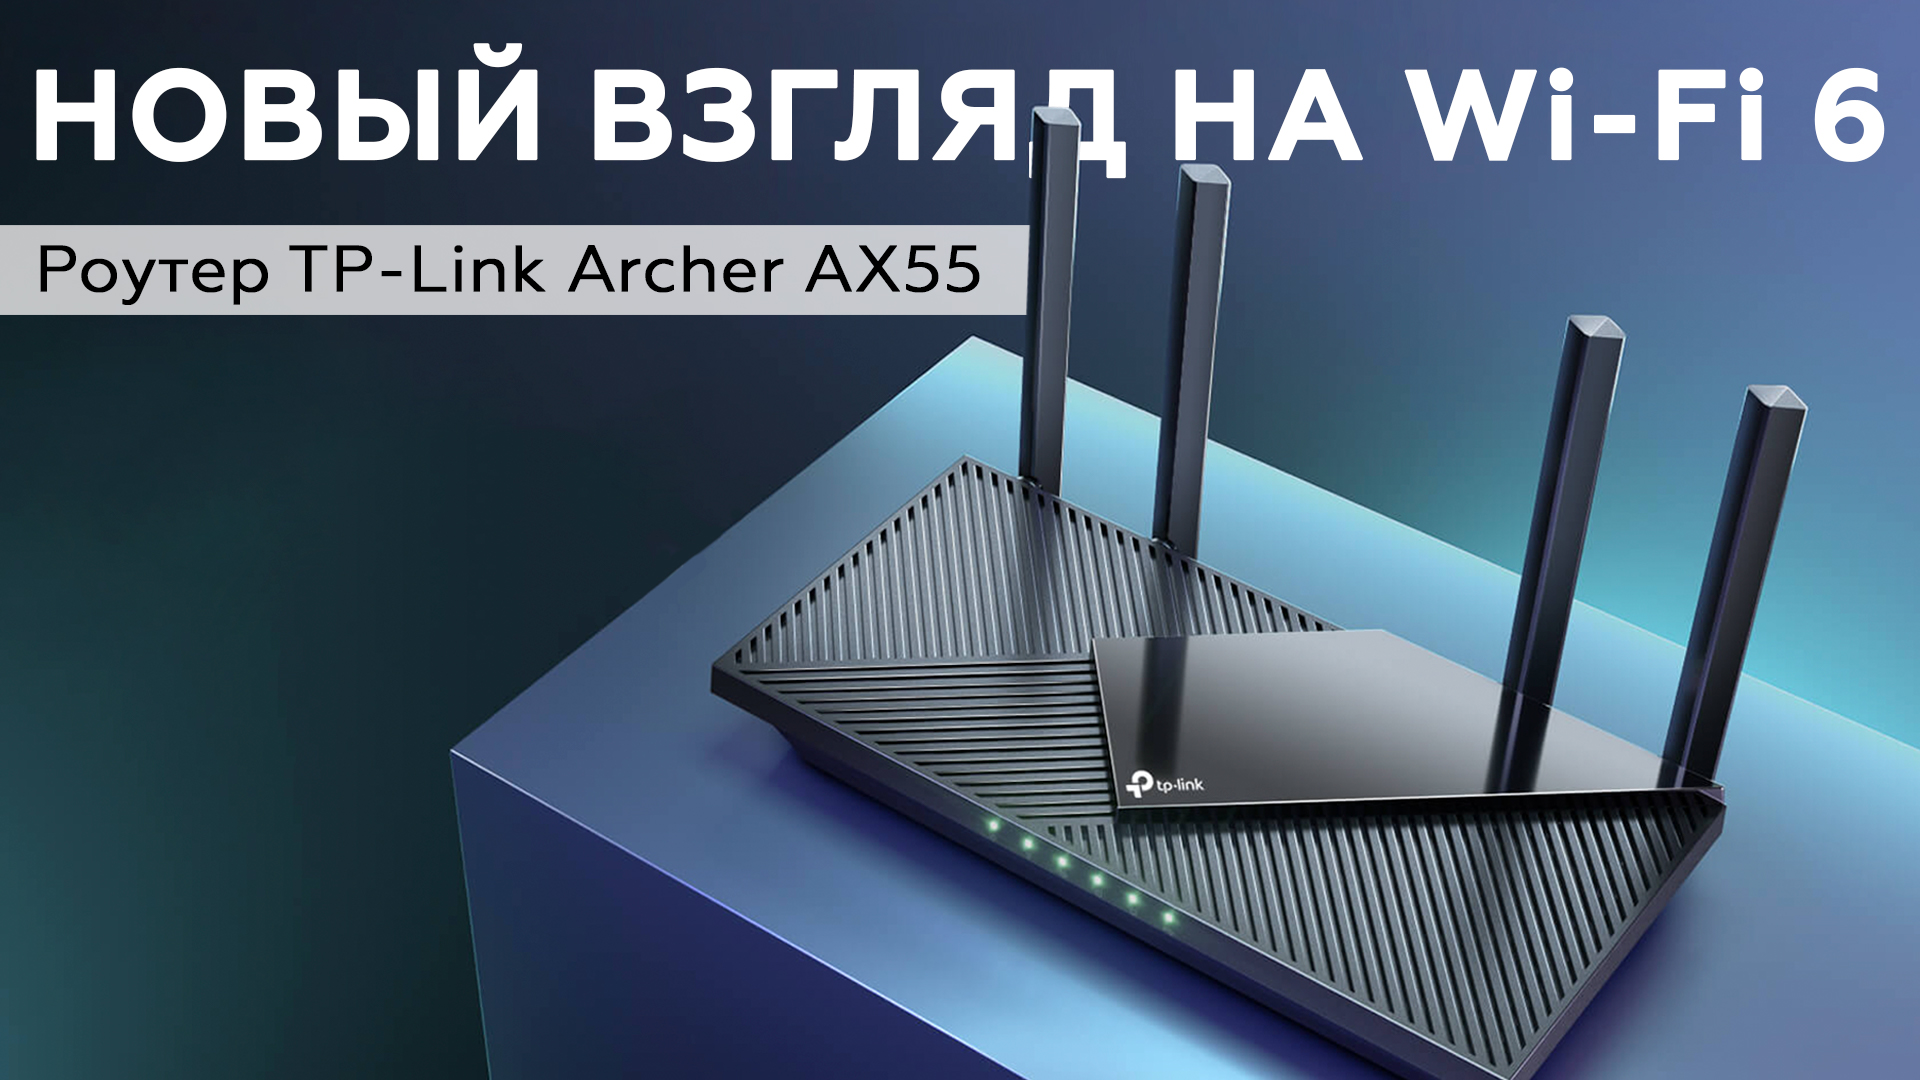 Обзор роутера TP-Link Archer AX55 с поддержкой Wi-Fi 6